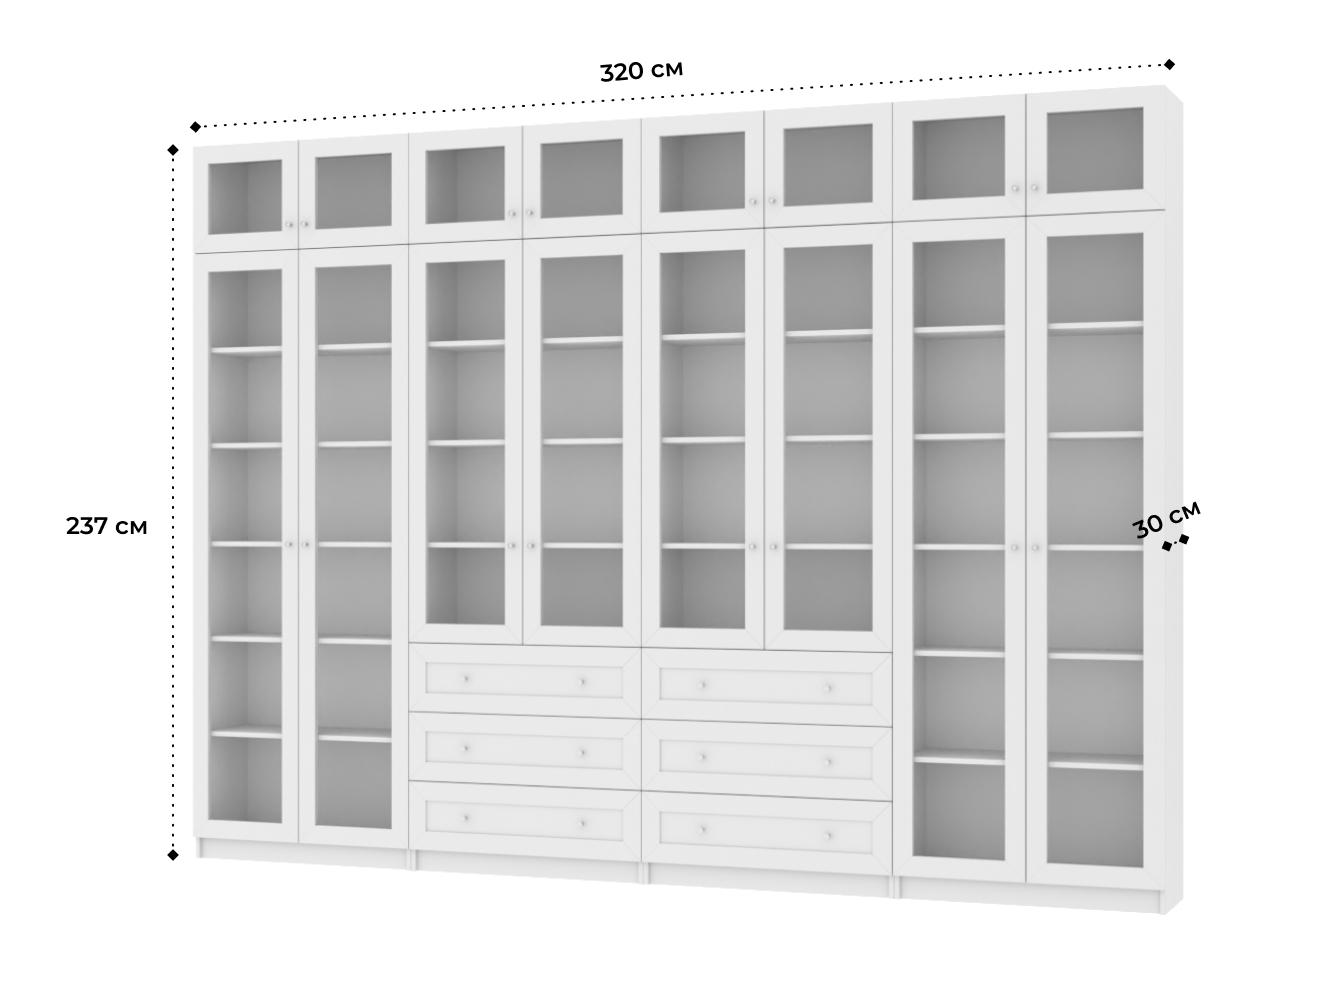 Изображение товара Книжный шкаф Билли 56 white ИКЕА (IKEA), 320x30x237 см на сайте adeta.ru